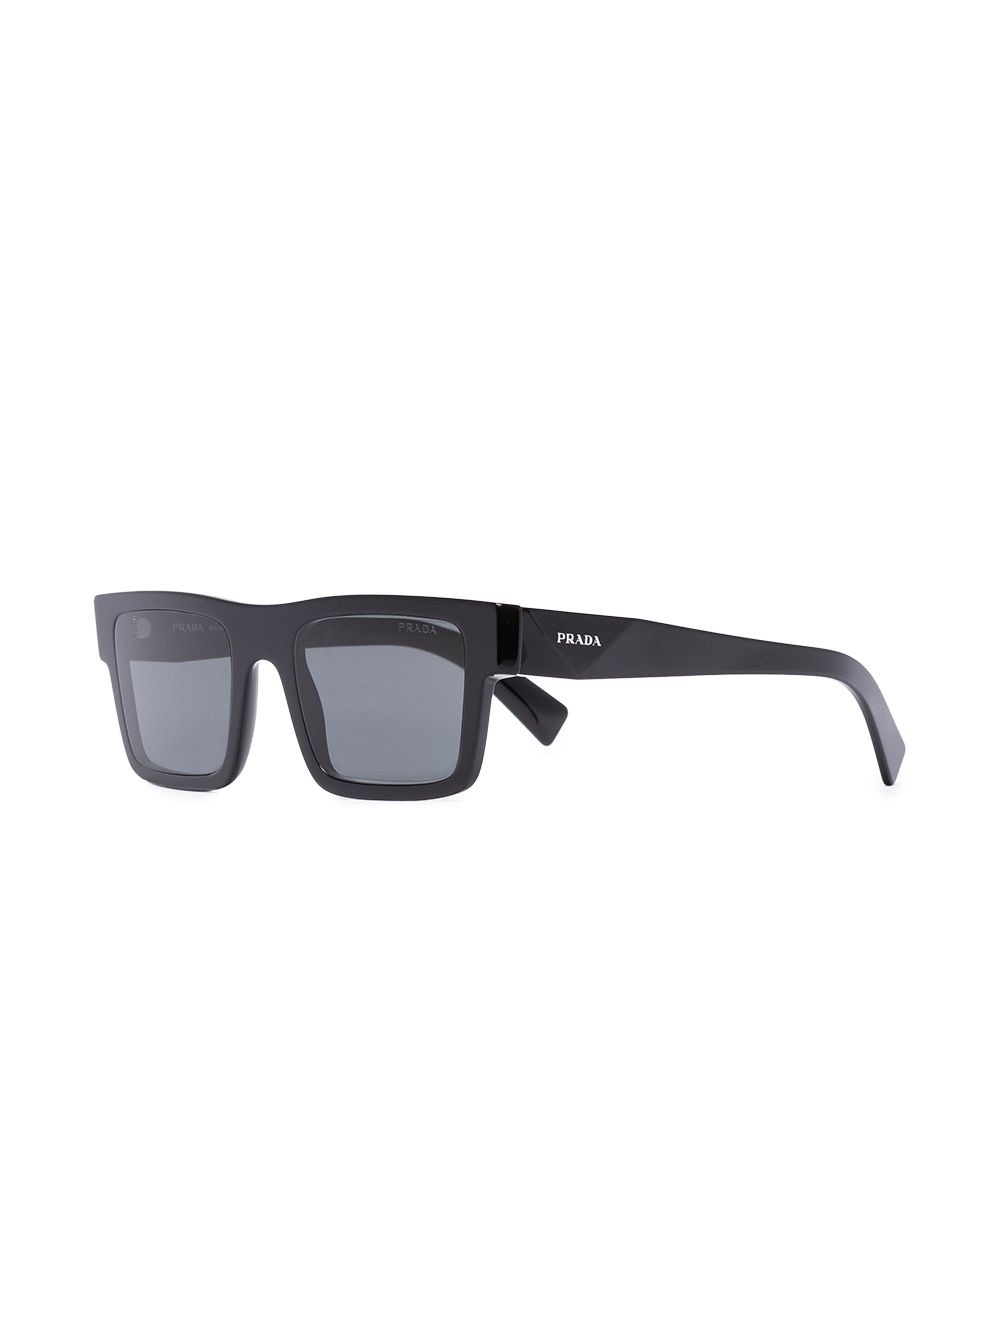 фото Prada eyewear солнцезащитные очки в квадратной оправе с логотипом